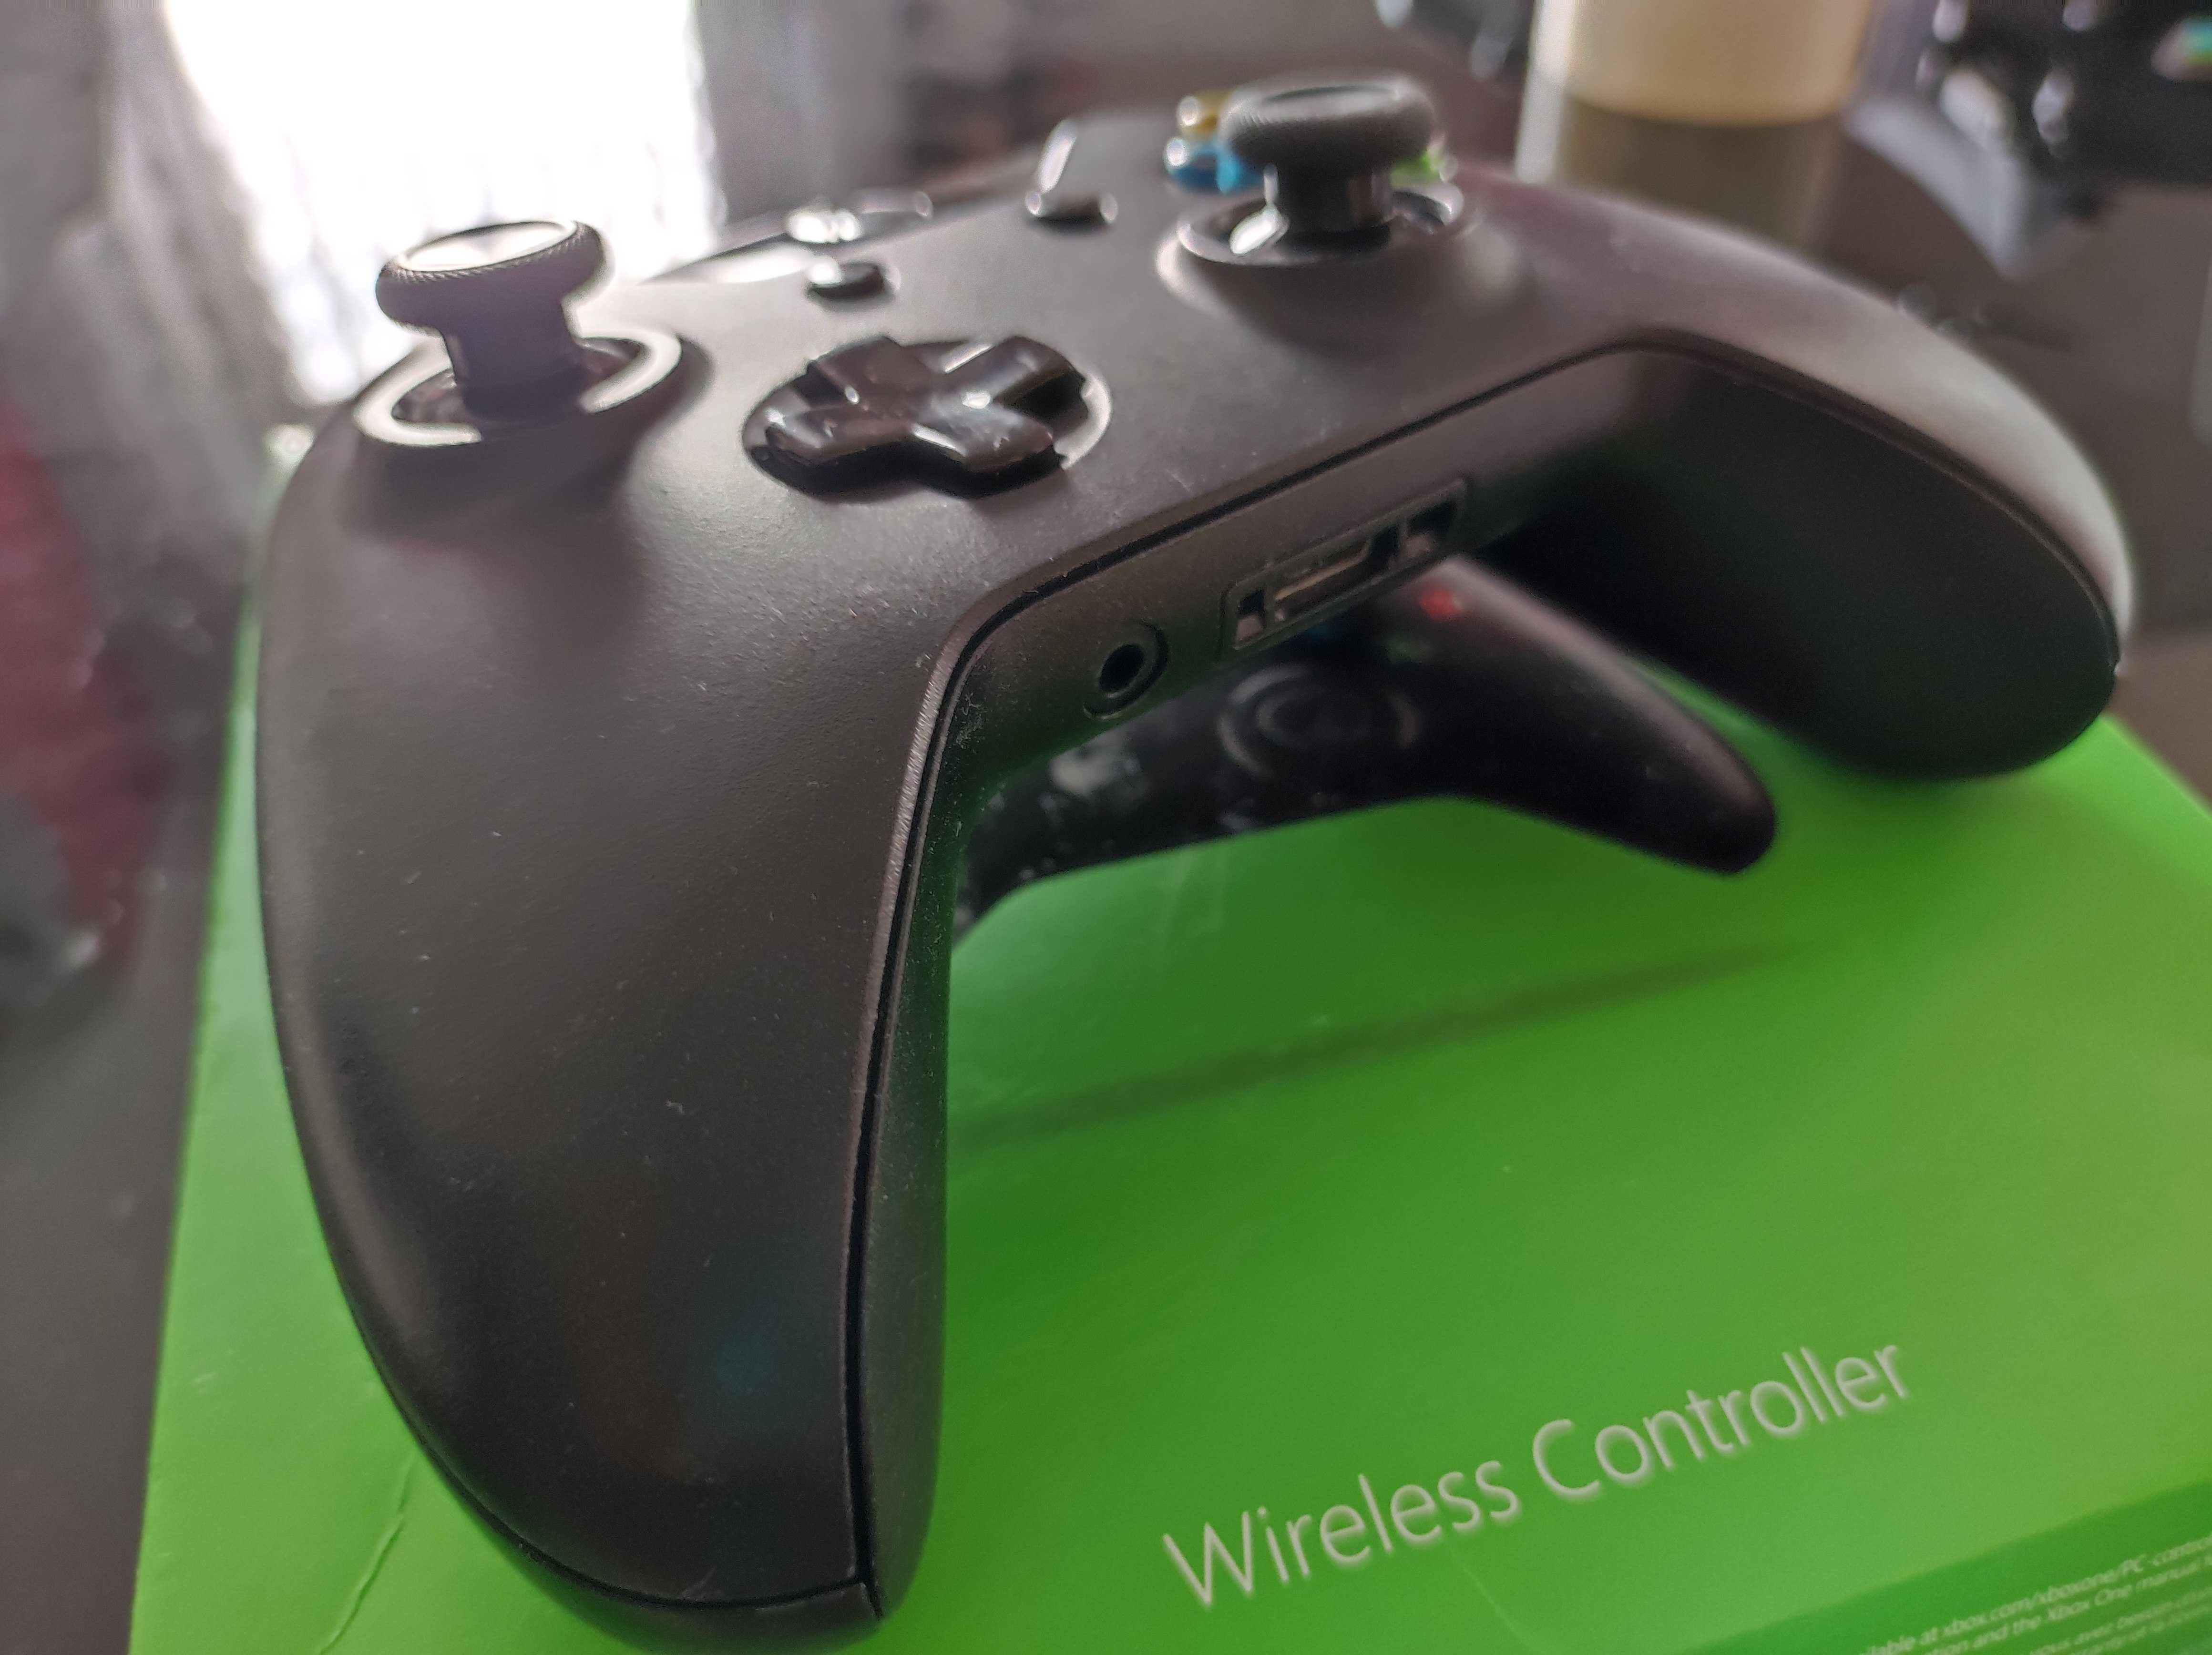 Pad do Xbox One Series S X czarny jak Nowy w pudełku